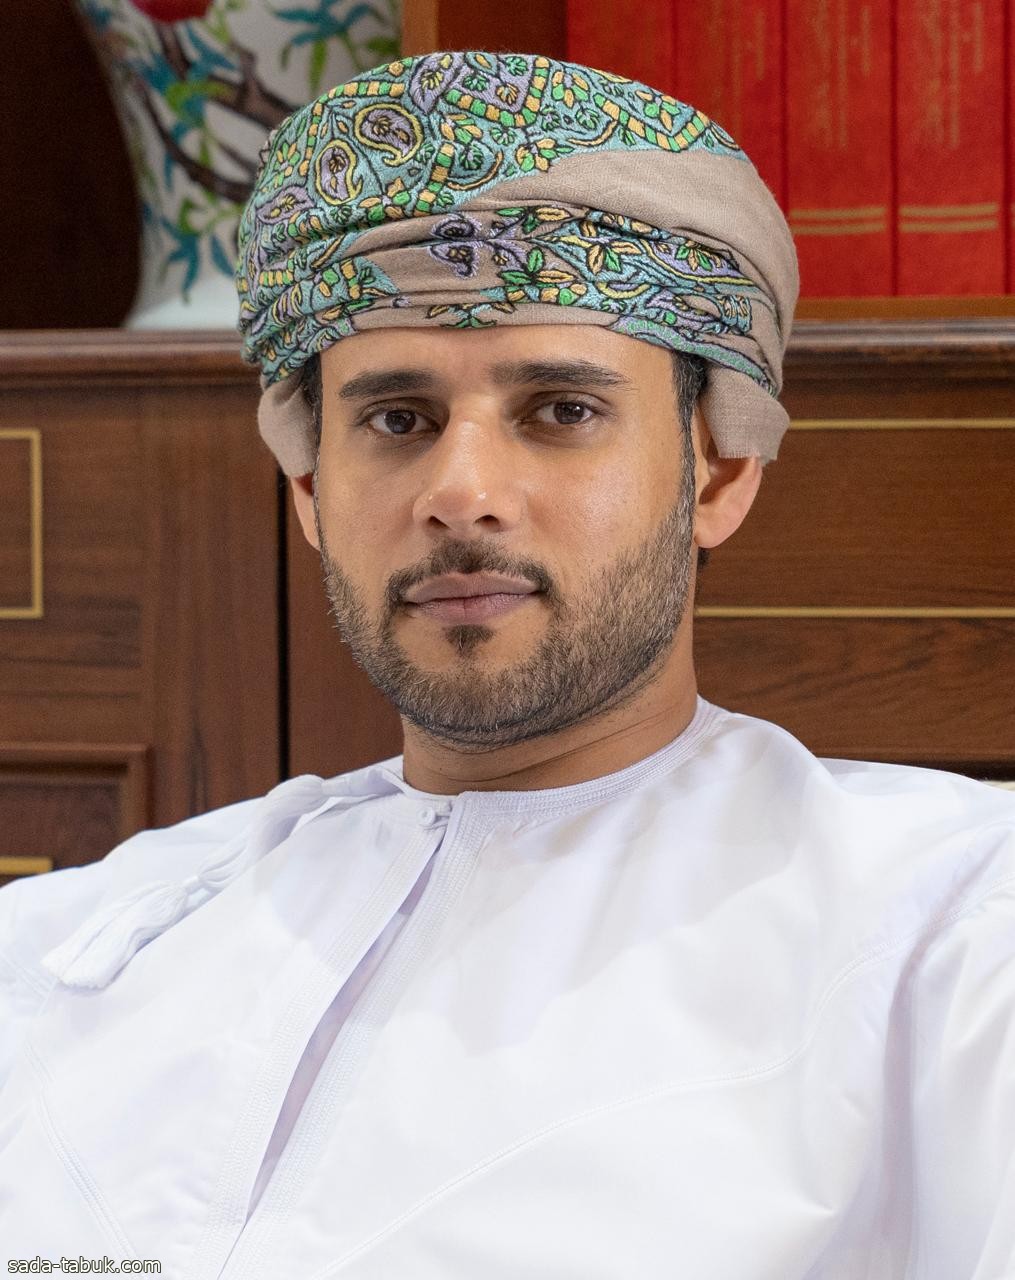 اتحاد الغرف الخليجية يدعو إلى تعظيم مشاركة القطاع الخاص الخليجي في تحقيق الأمن الغذائي بدول المجلس